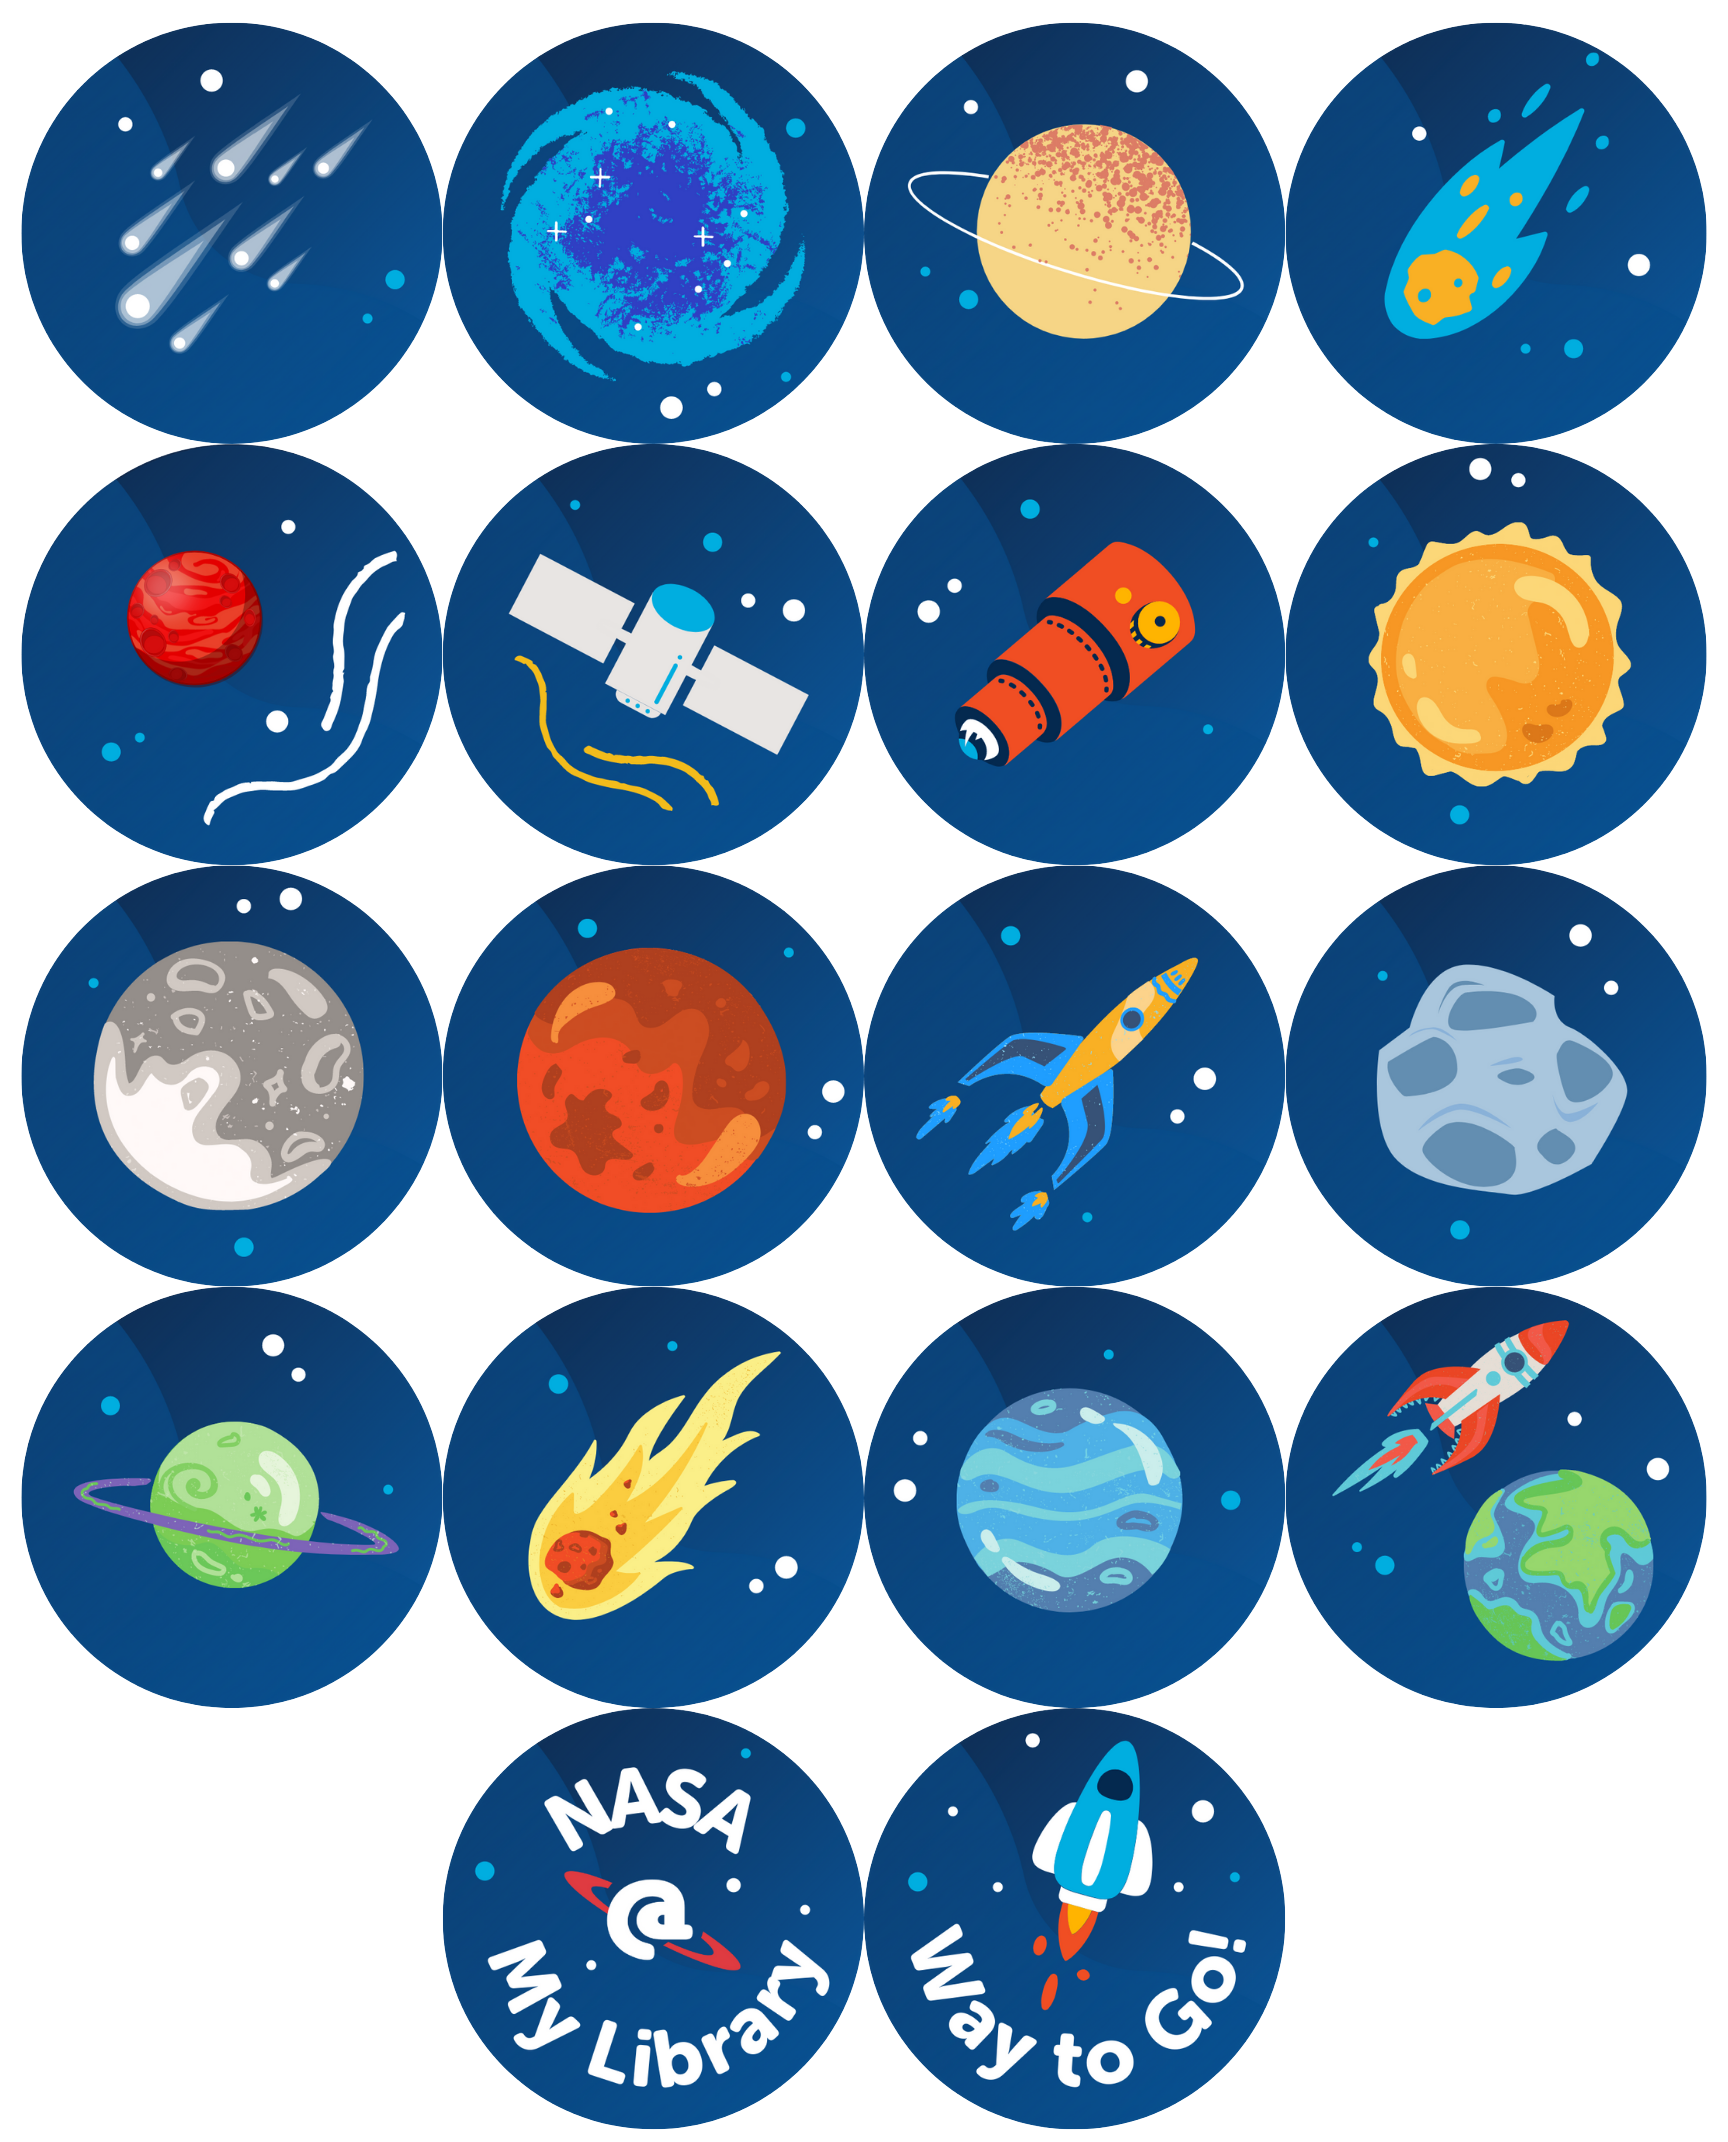 NASA__My_Library_Badges.png